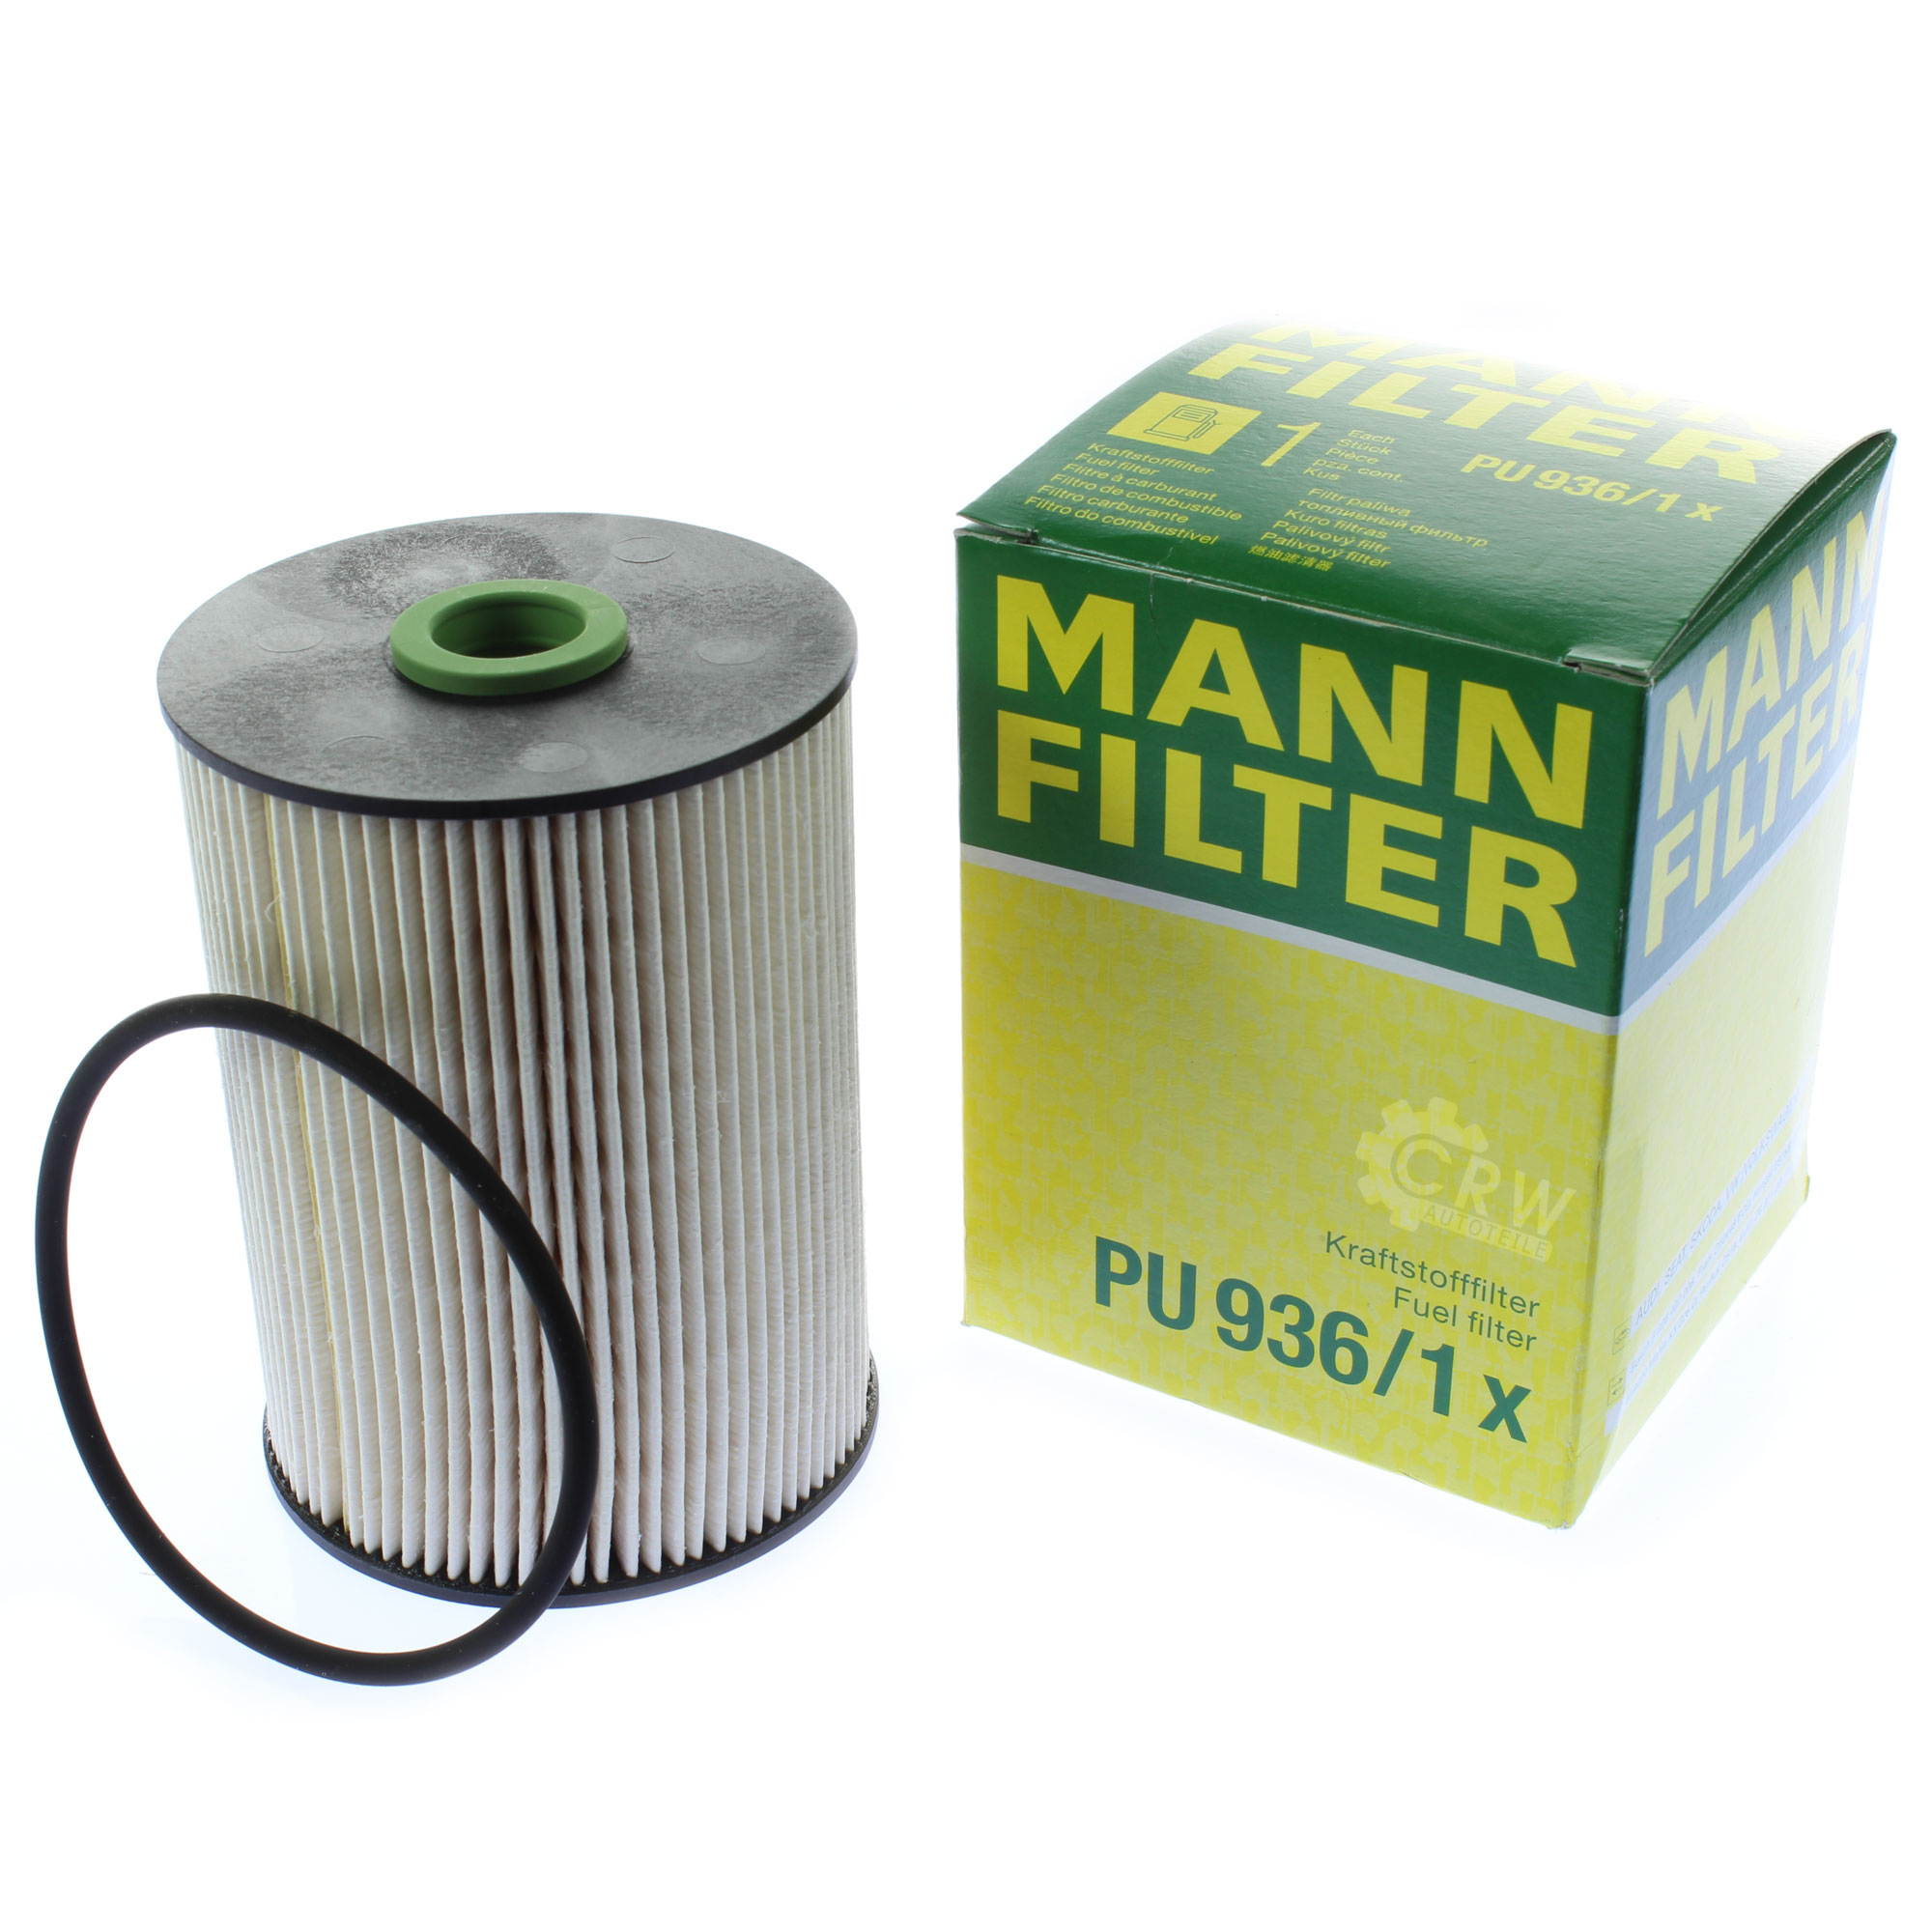 MANN-FILTER Kraftstofffilter PU 936/1 x Fuel Filter